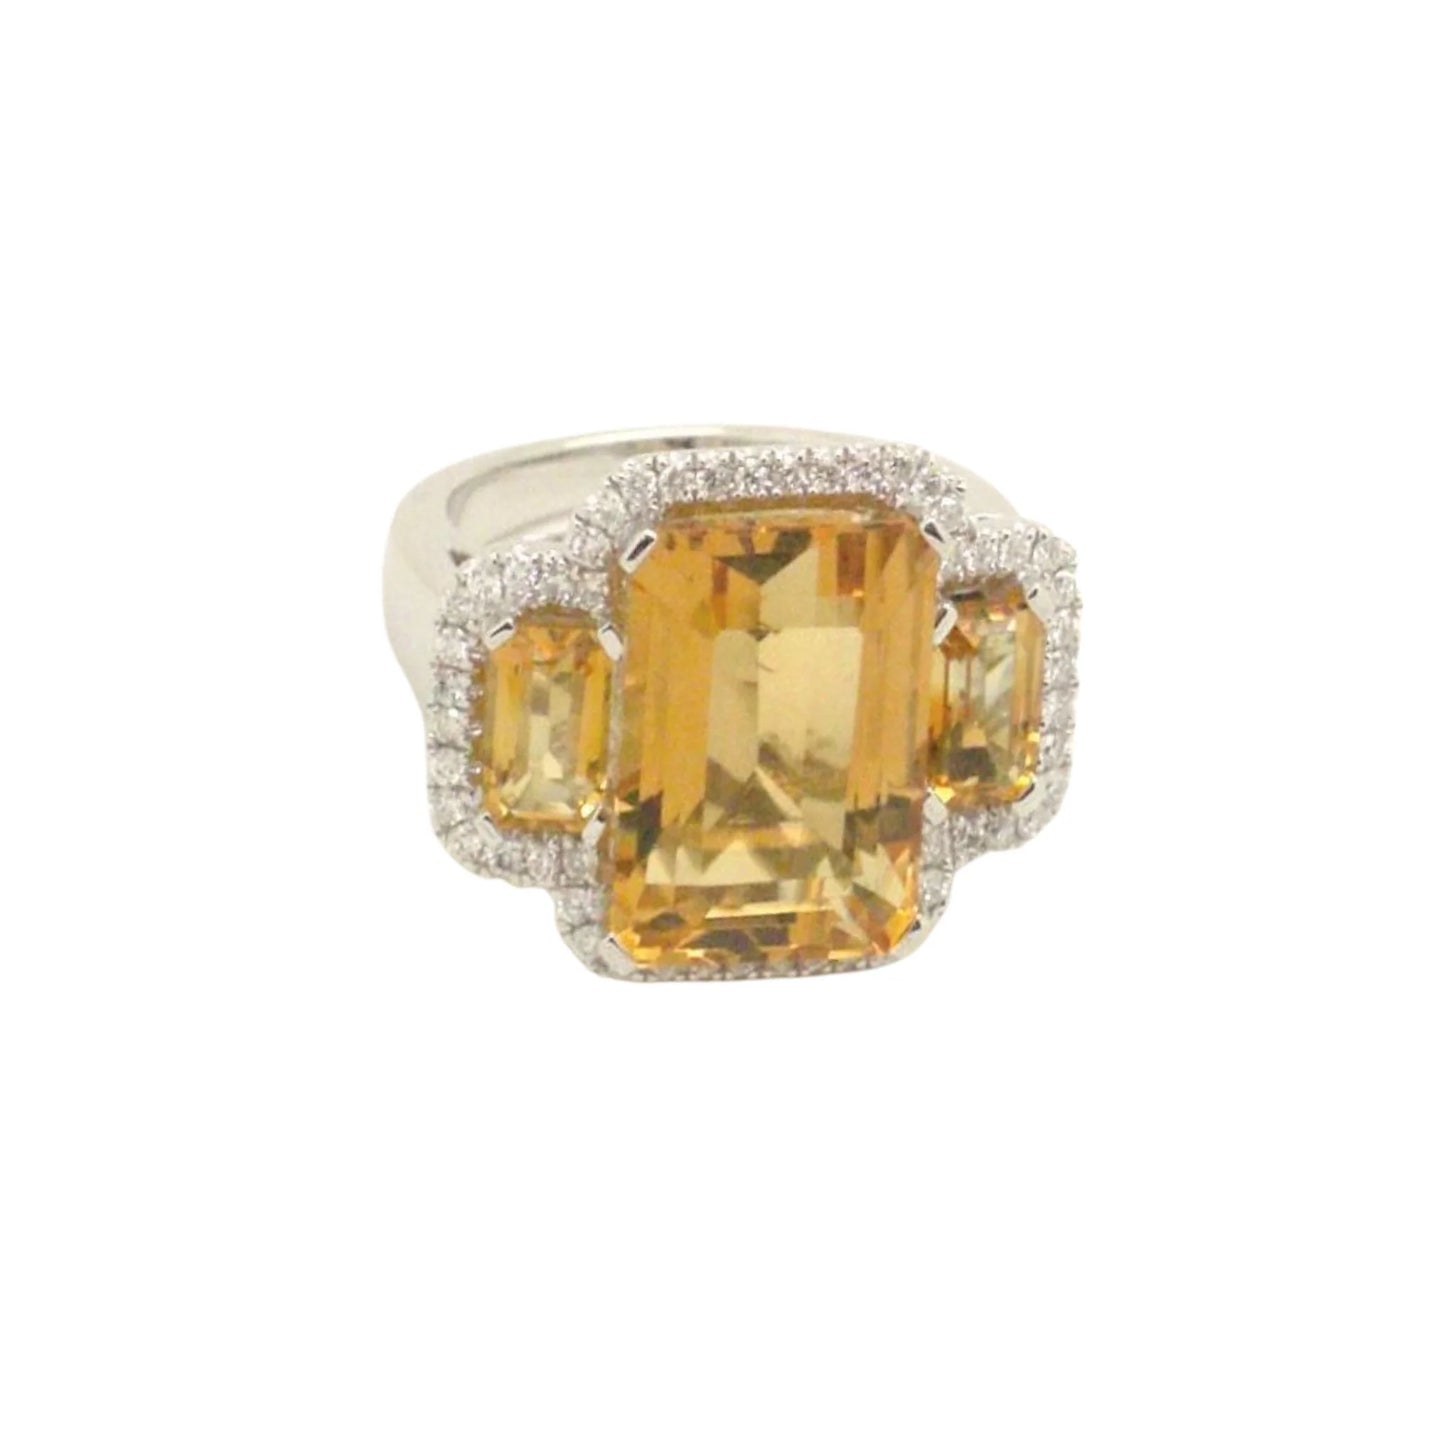 8602R Ring With Diamond & Gemstone